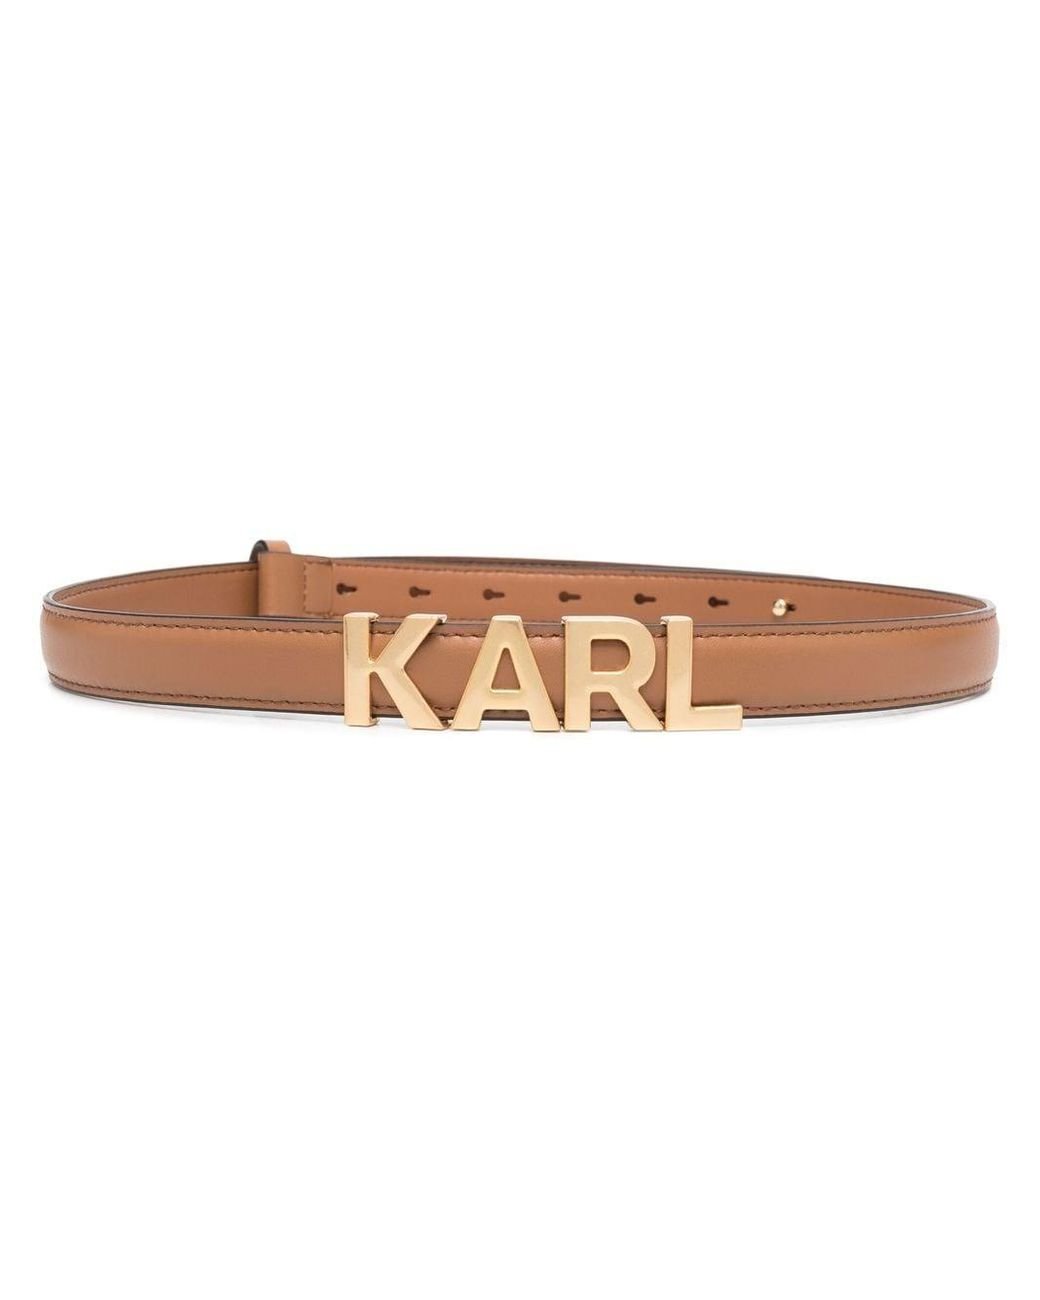 Karl Lagerfeld K/letters Leather Belt in Brown | Lyst